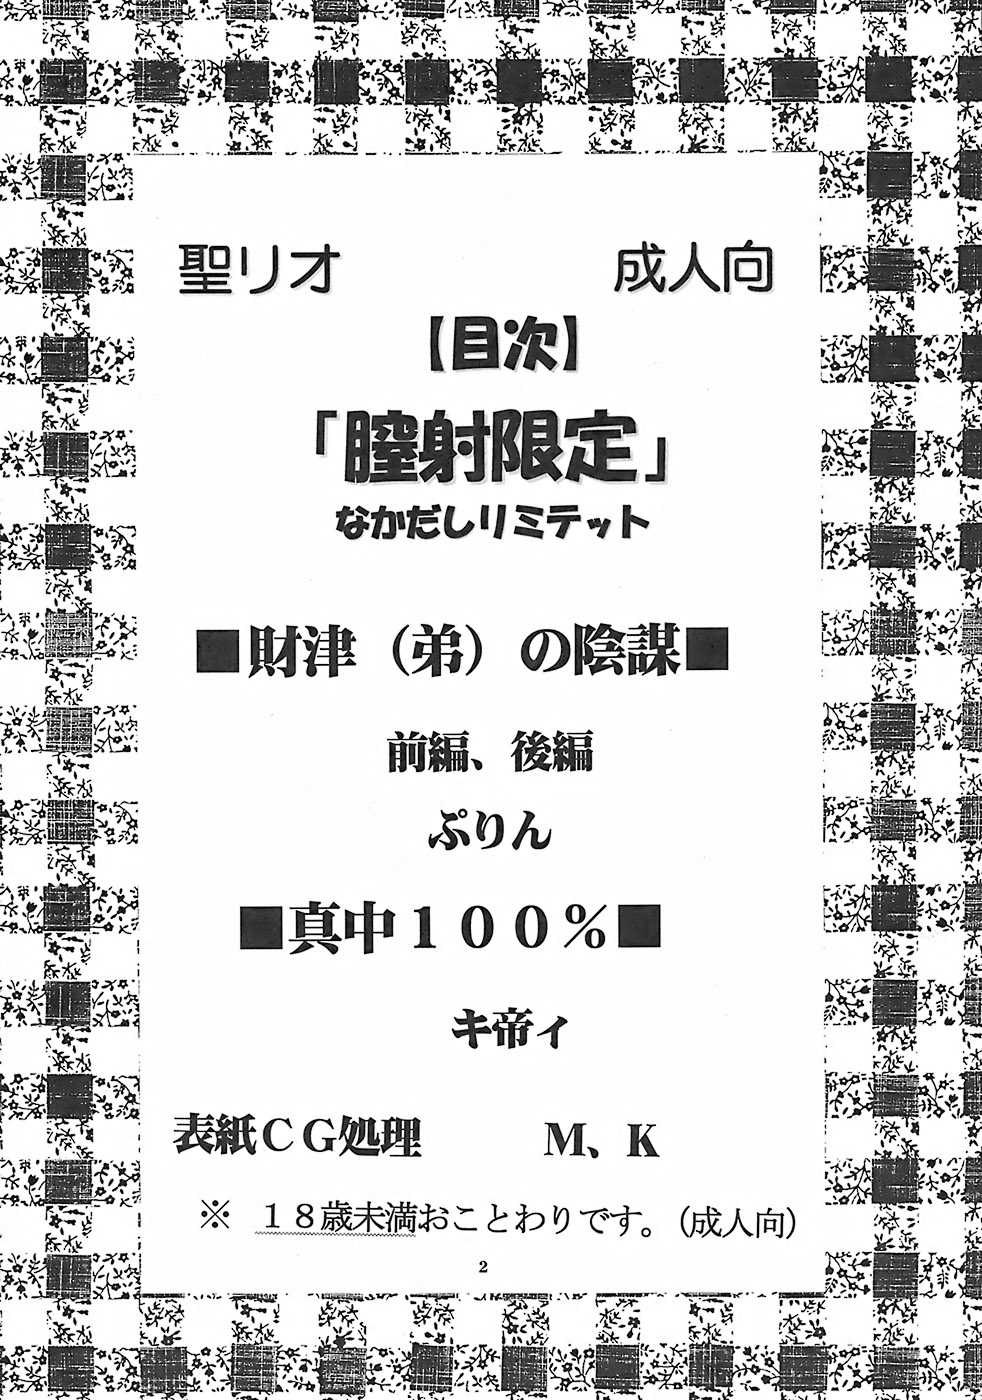 [St. Rio] Chitsui Gentei Nakadashi Limited vol.1 (Hatsukoi Gentei) 